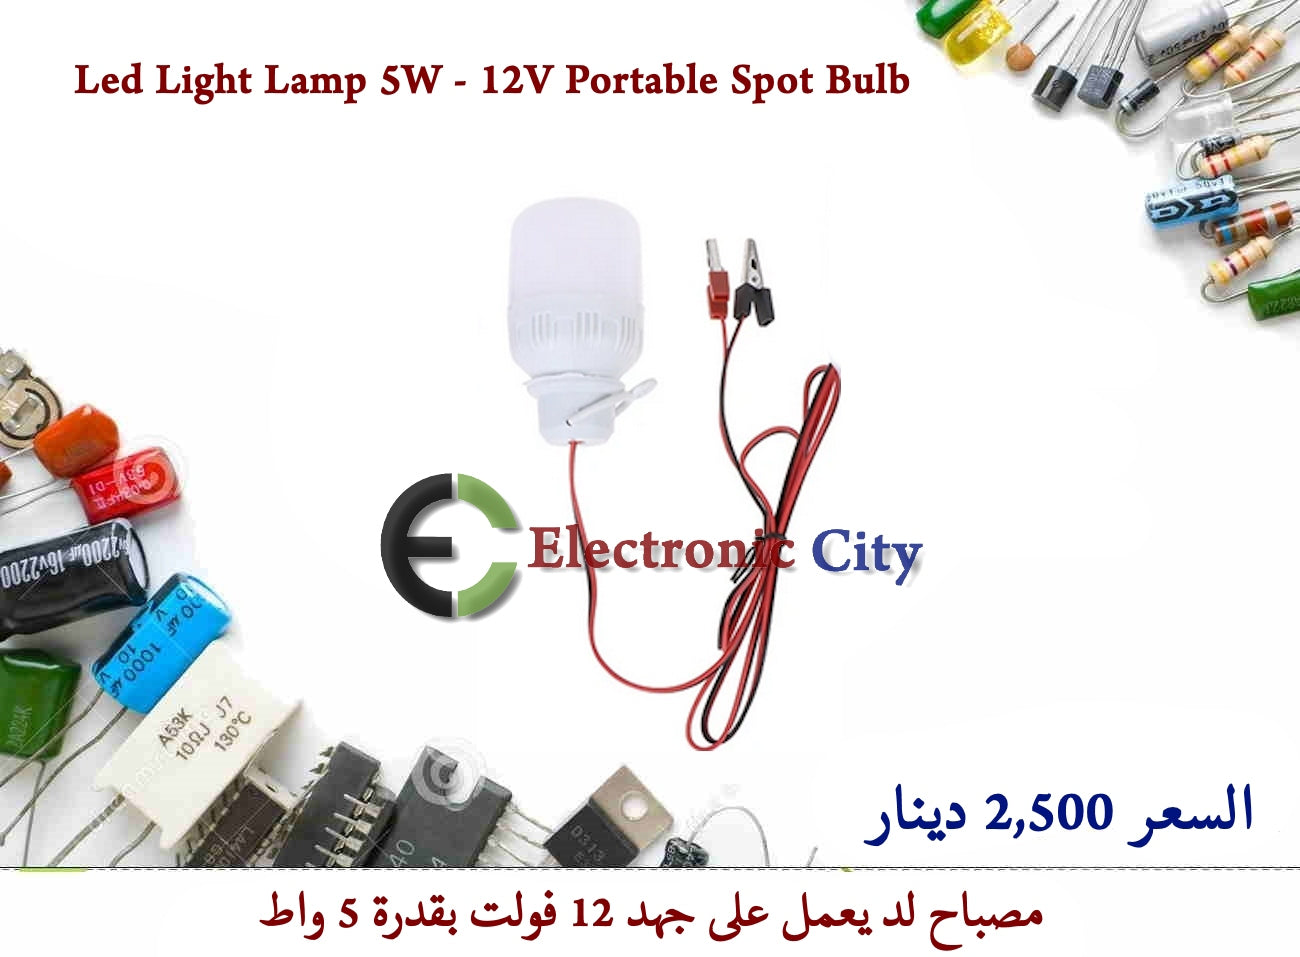 Led Light Lamp 5W - 12V Portable Spot Bulb